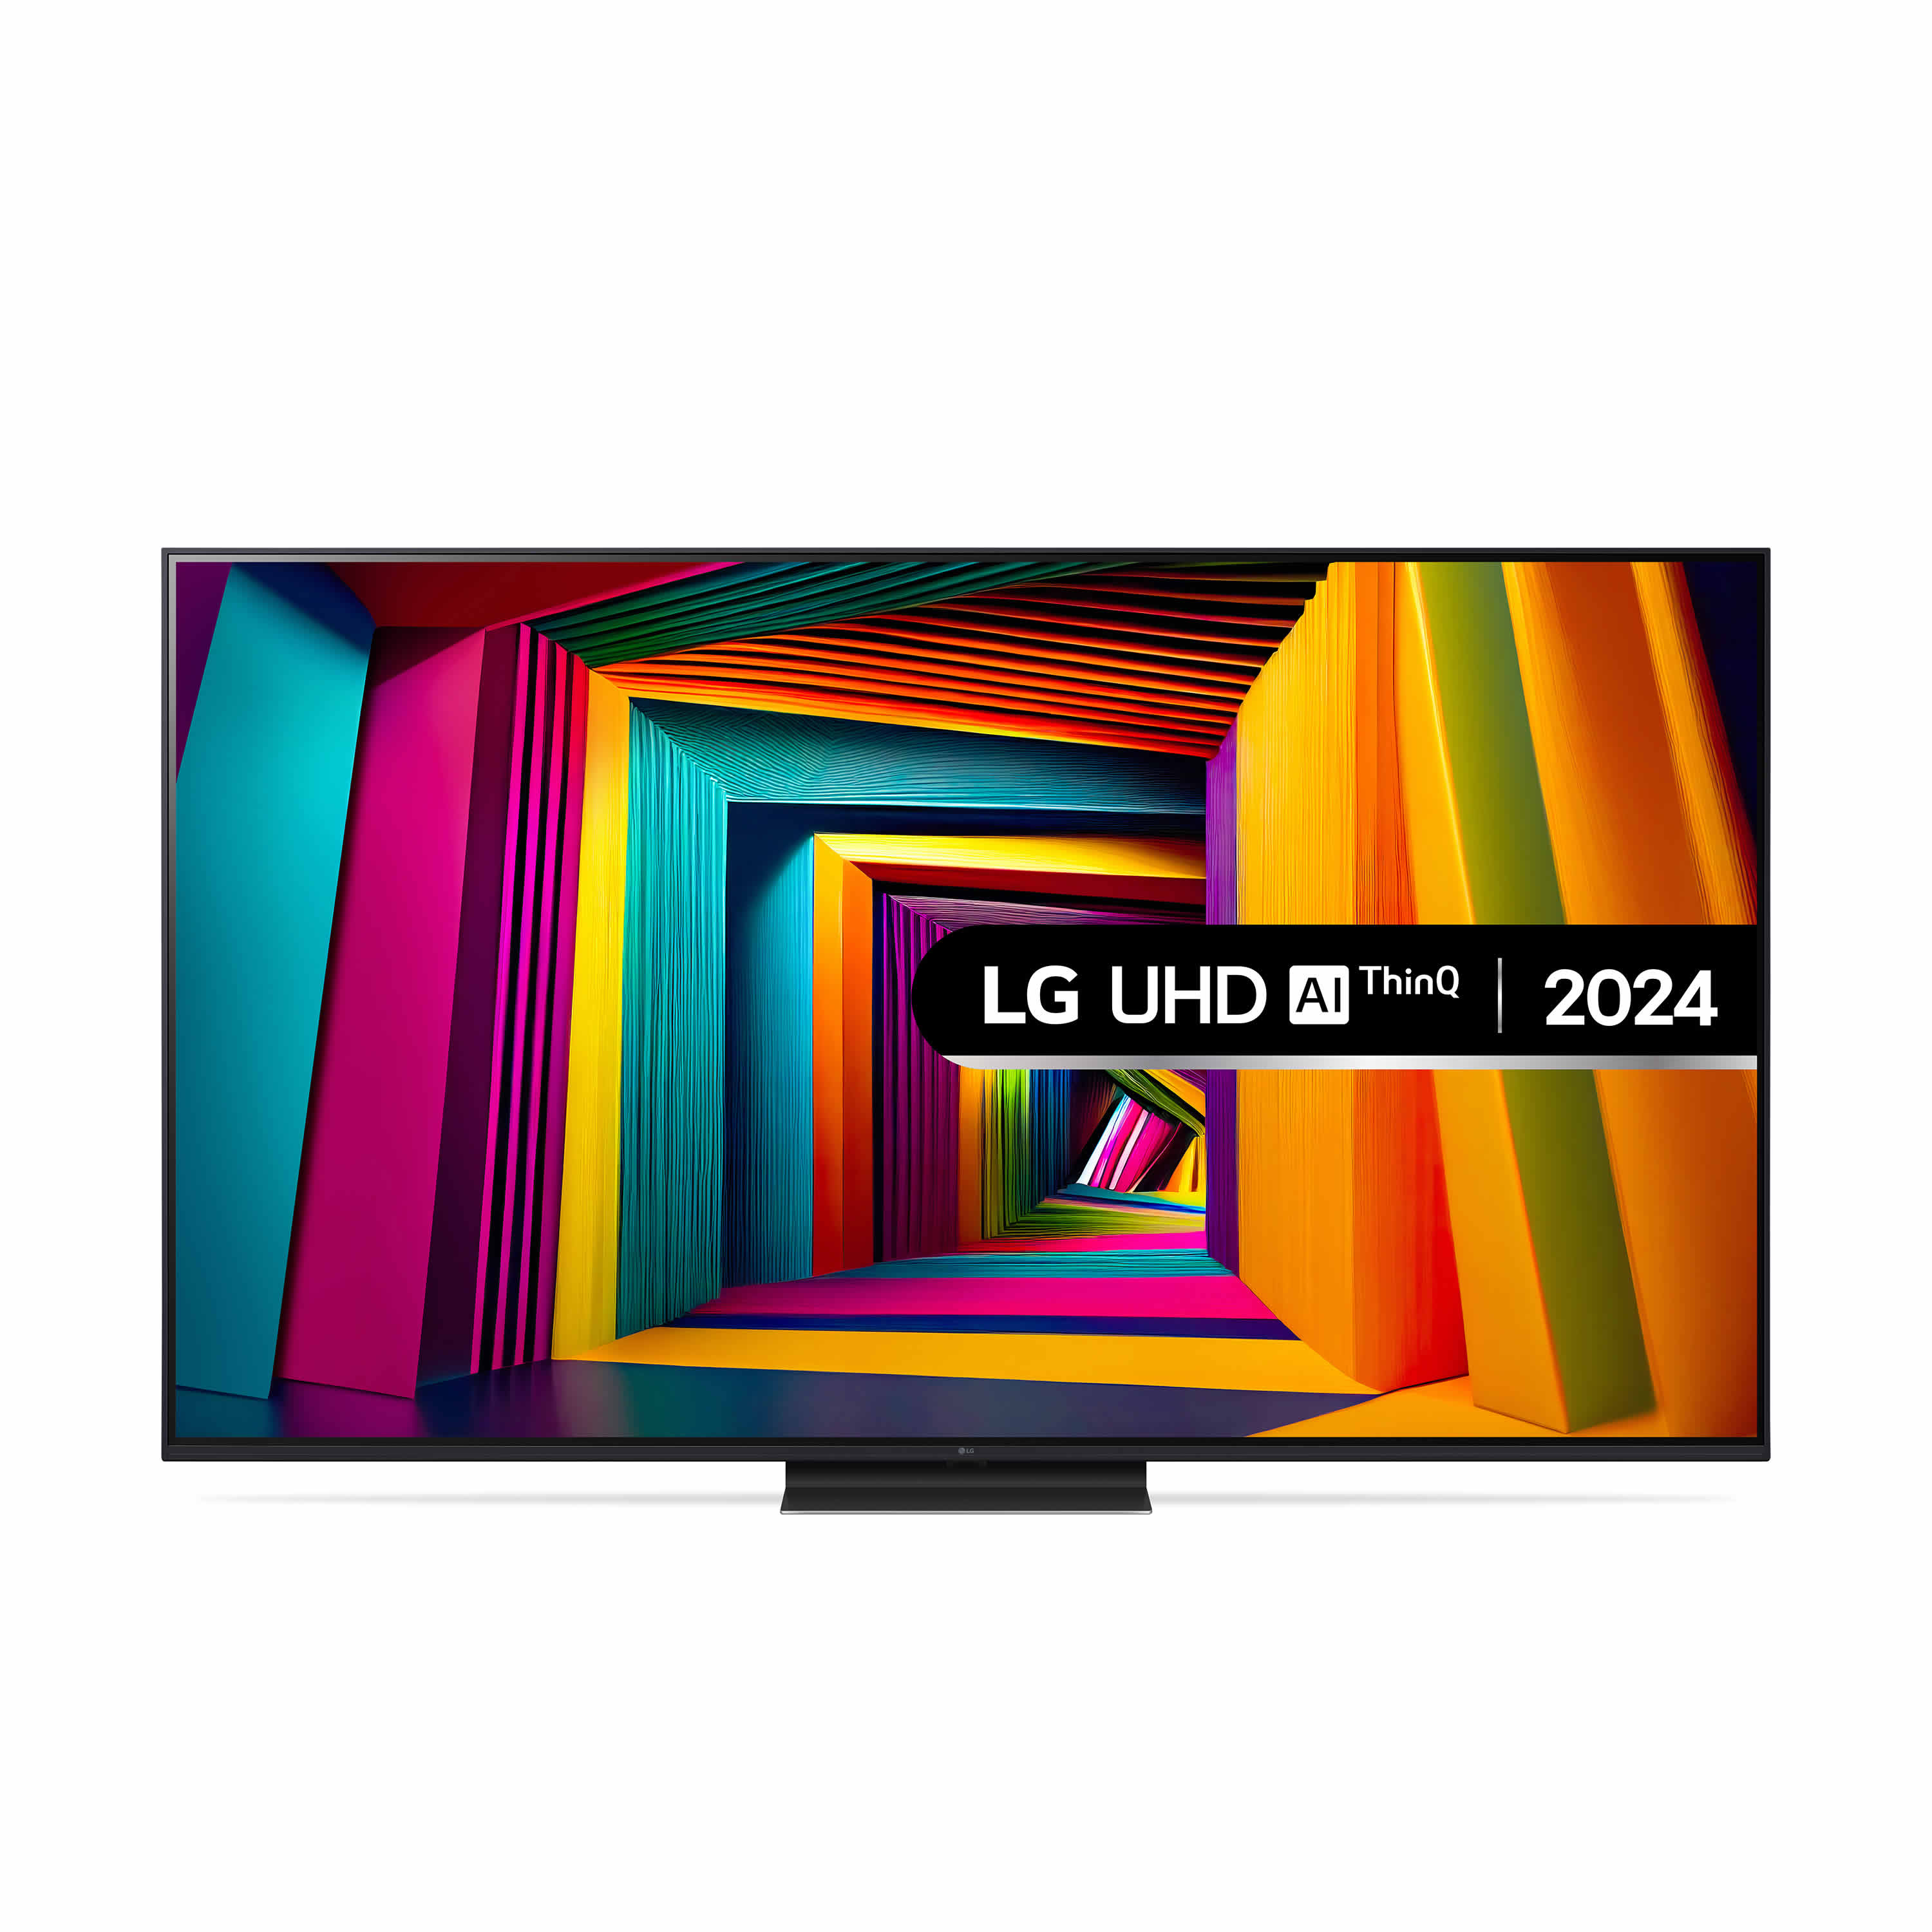 LG 65inch HDR 4K UHD LED SMART TV WiFi Built-in Alexa